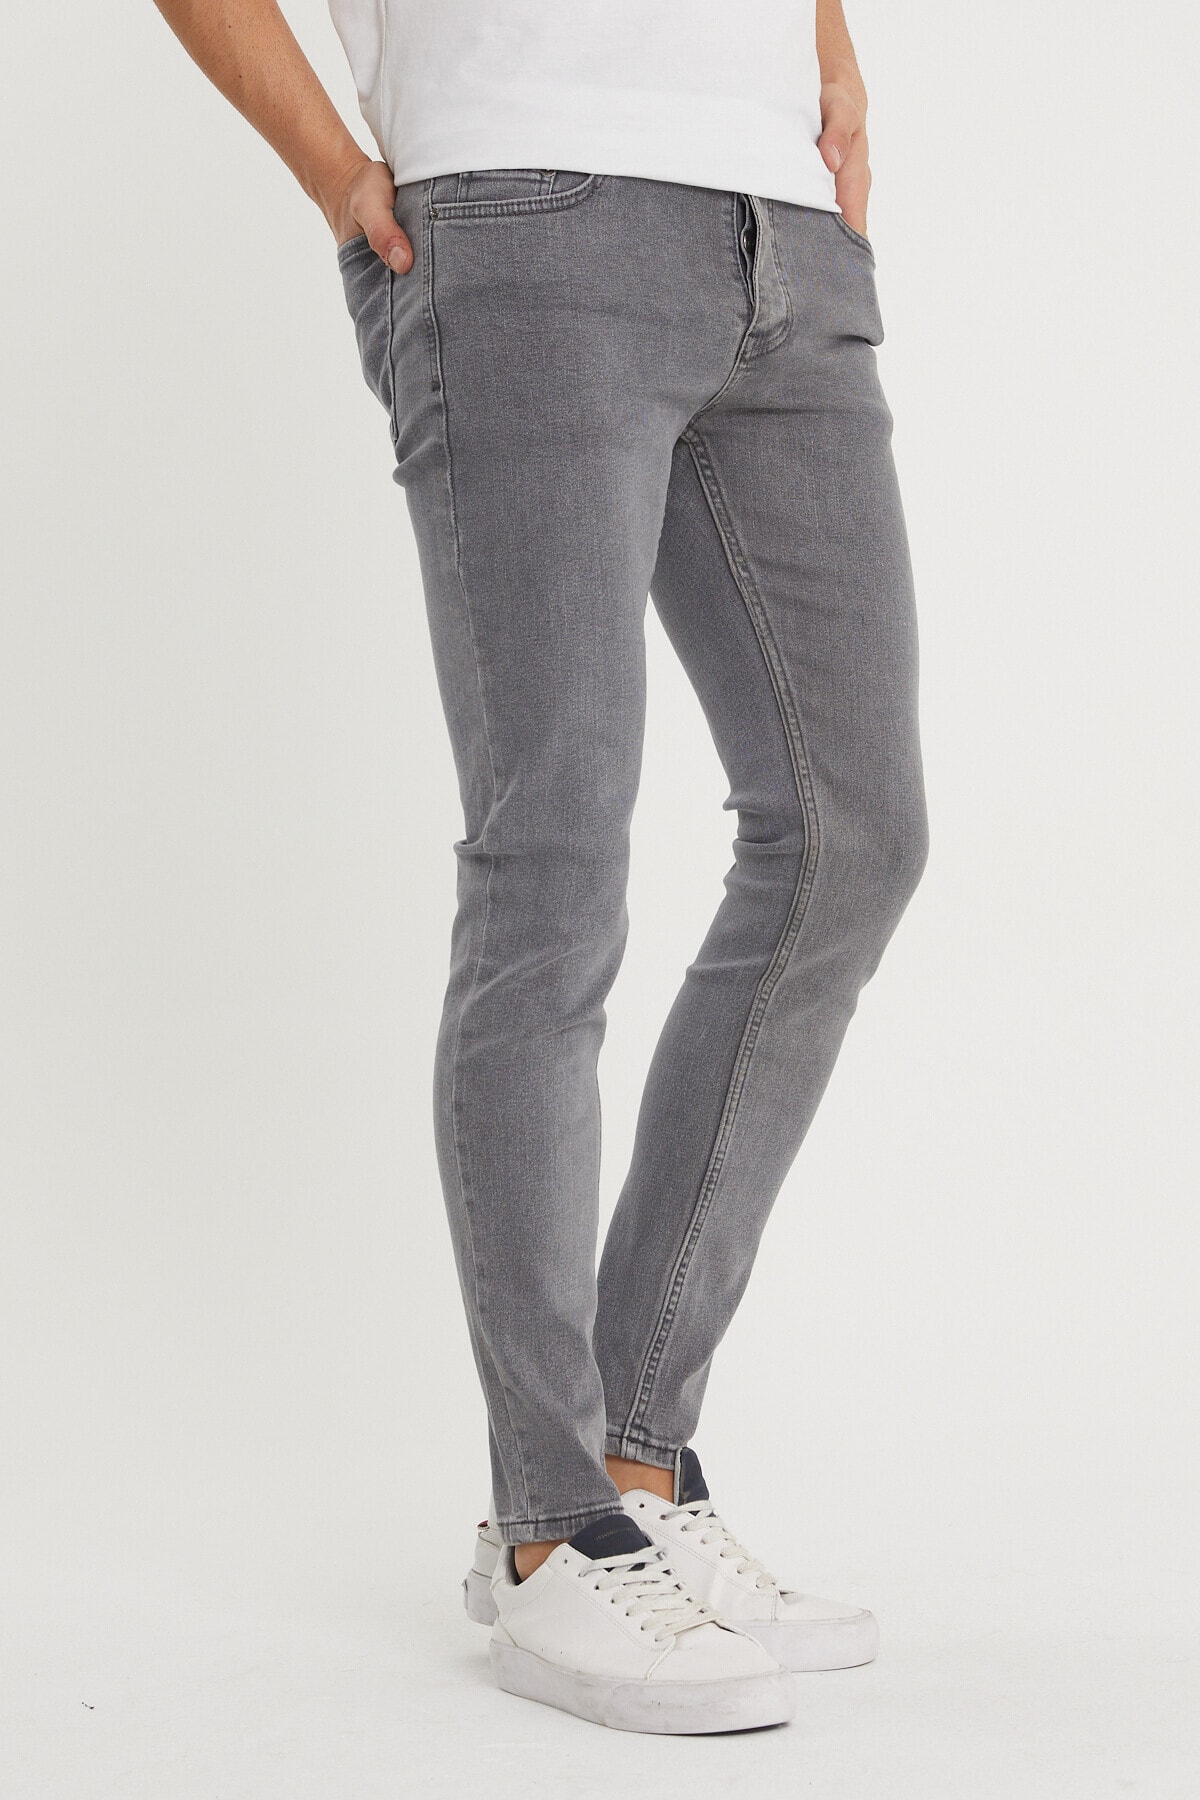 Levně XHAN Men's Gray Slim Fit Jeans